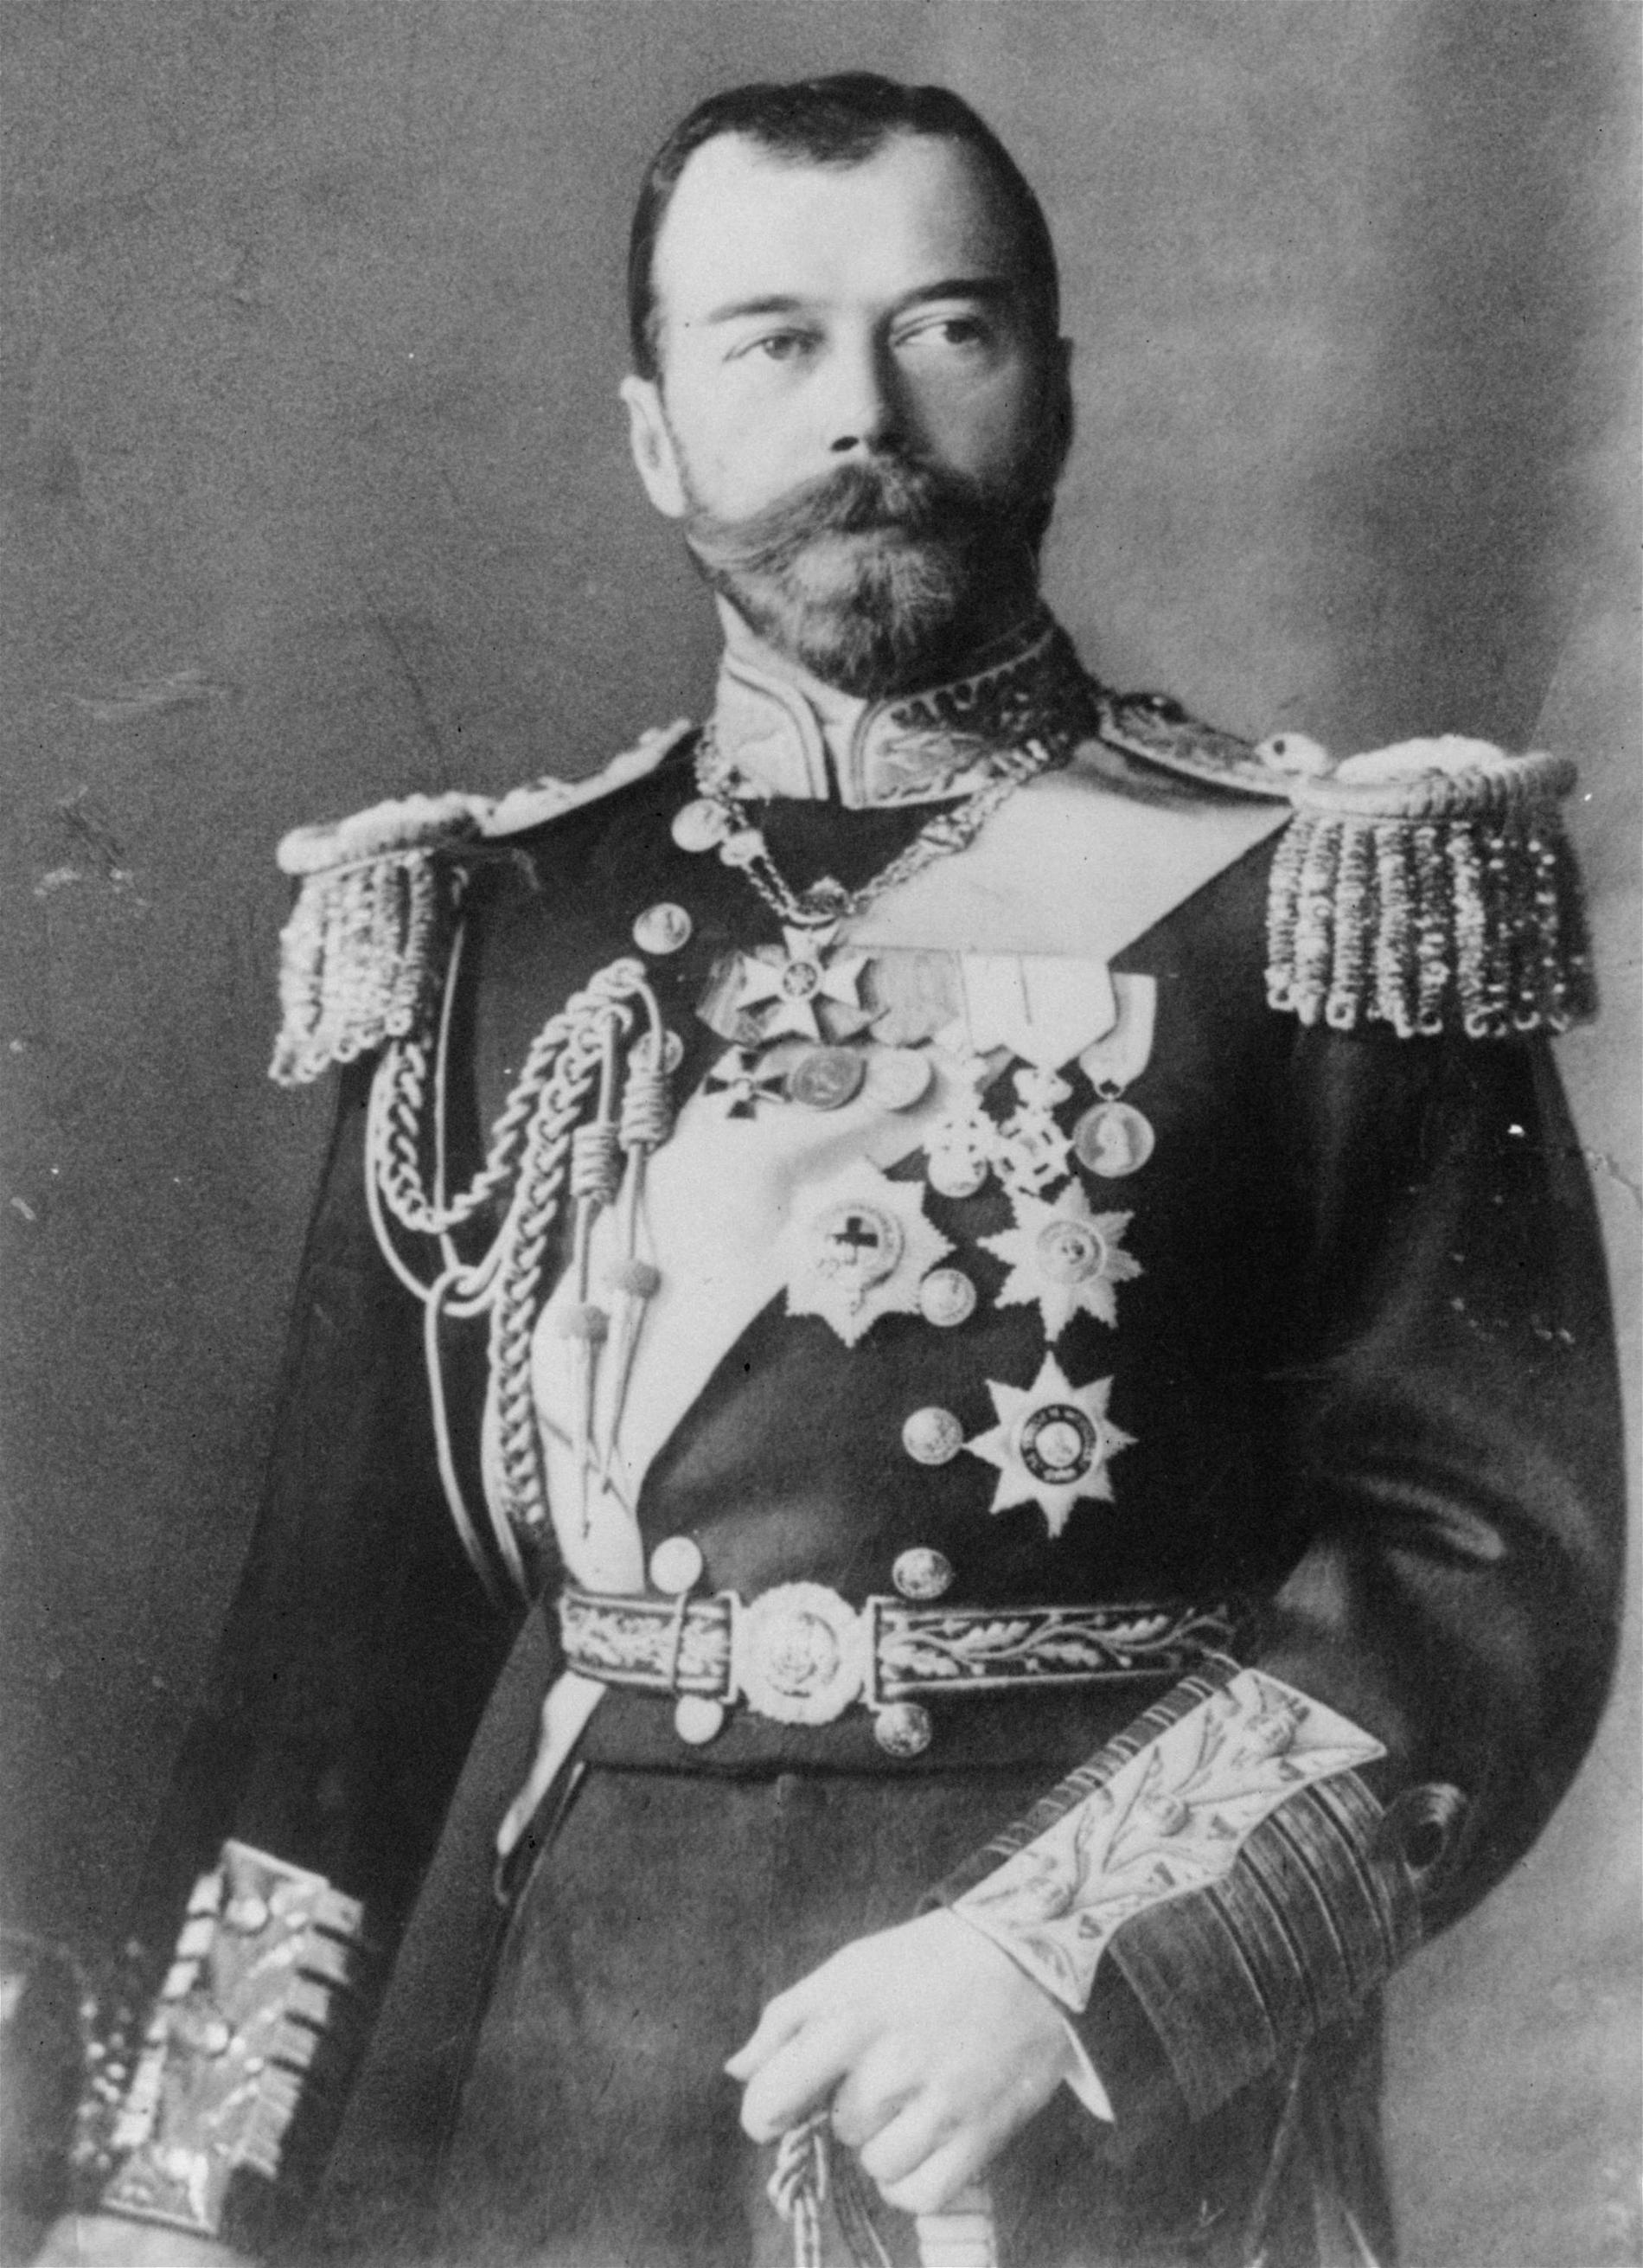 Han föll i en av Rysslands "stora oredor": Nikolaj II var tsar från 1894 till 1917, här på ett odaterat foto.